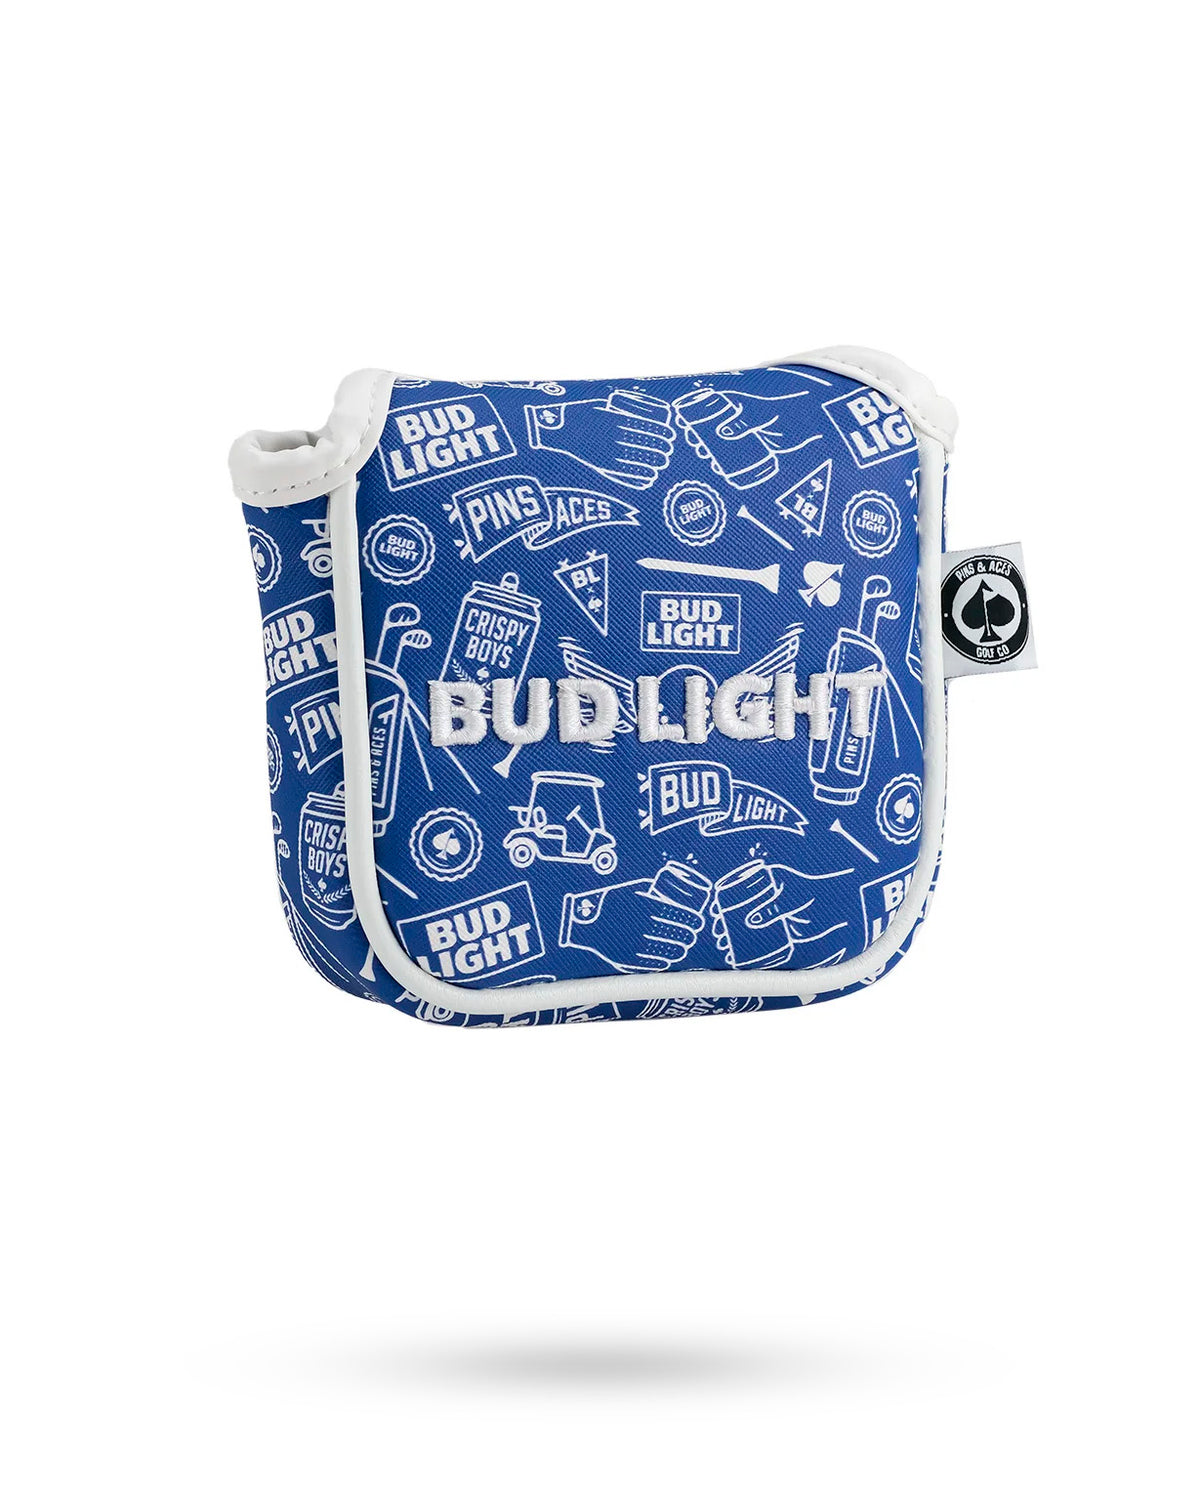 Bud Light Doodle - Mallet Putter Cover